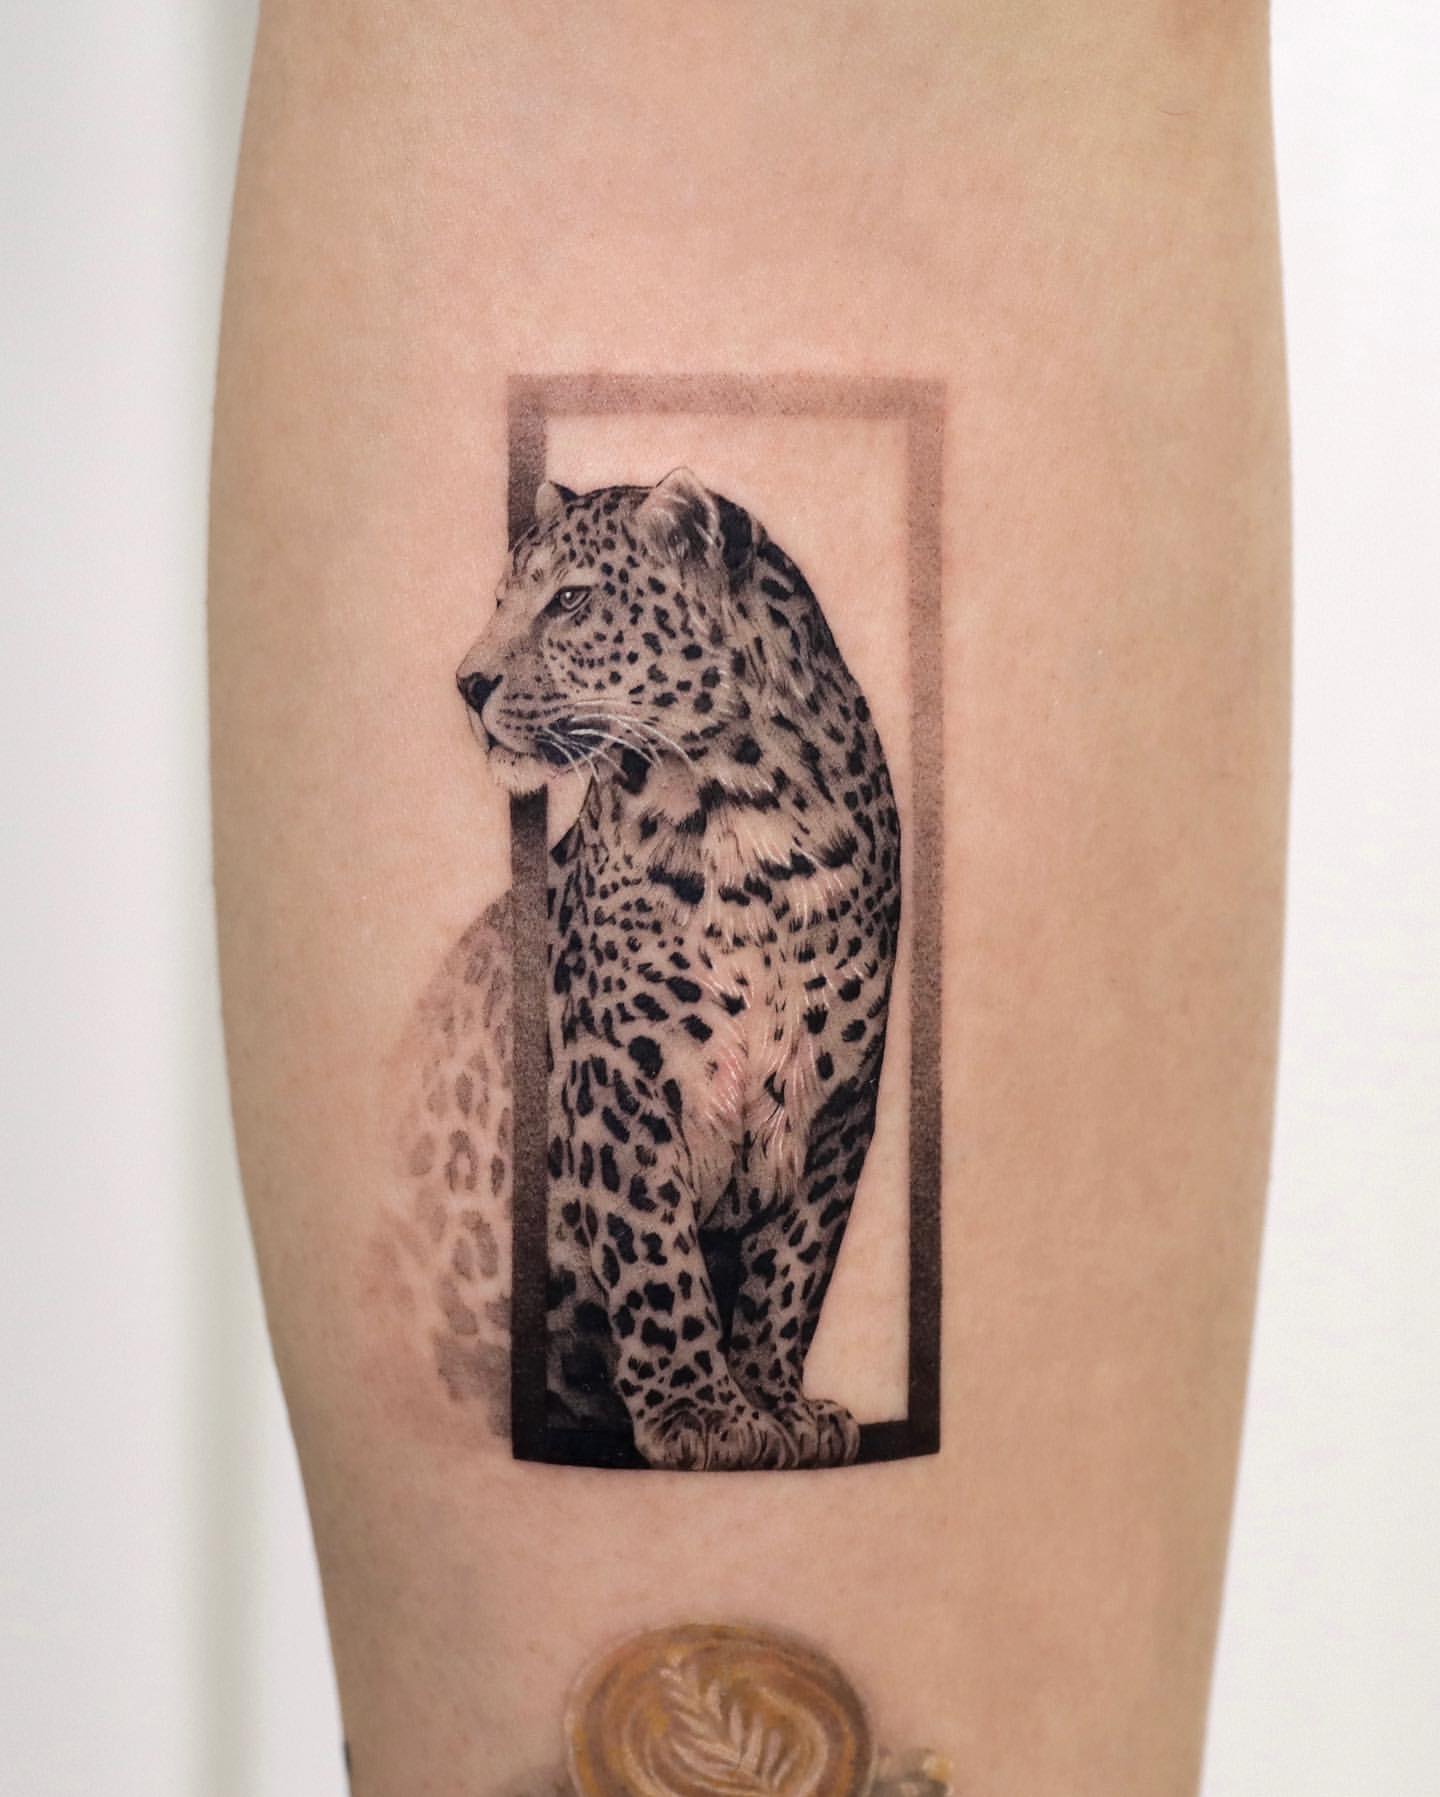 Leopard and Jaguar Tattoo Ideas 12